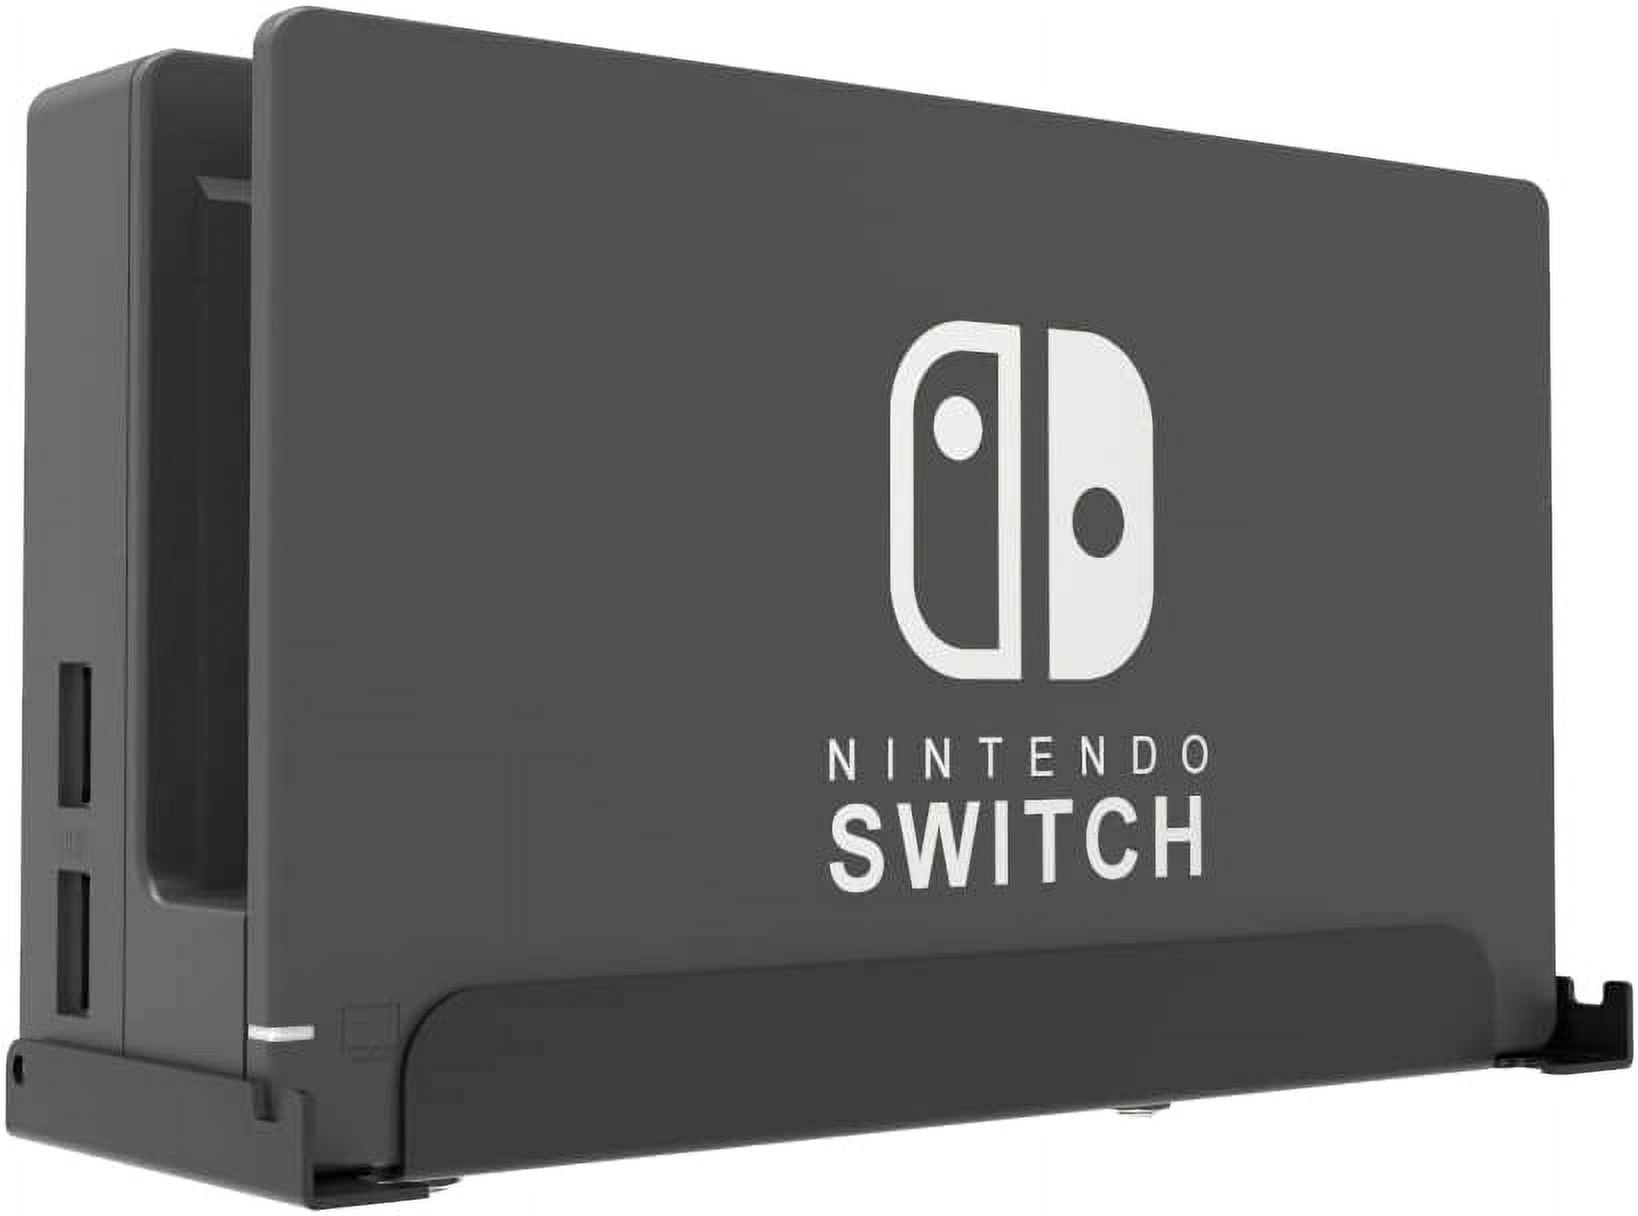 Innovelis TotalMount Mounting Frame Wandhalterung Nintendo Switch